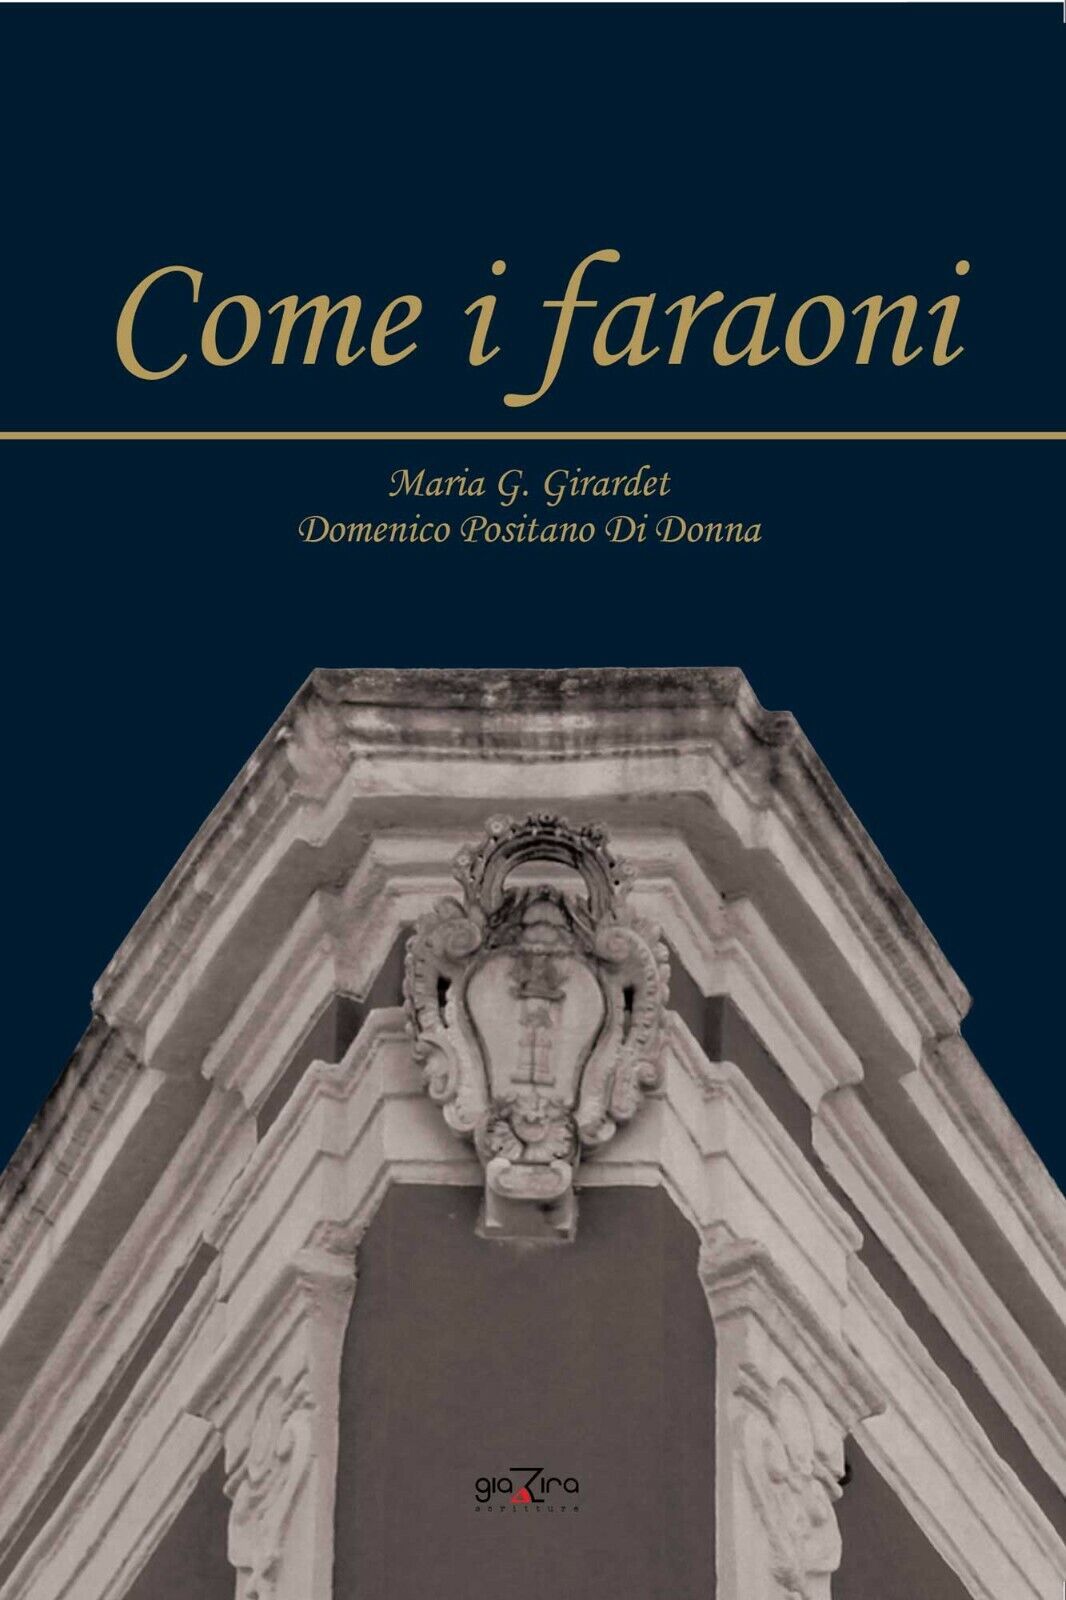 Come i faraoni - Maria G. Girardet; Domenico Positano Di Donna - Giazira - 2020